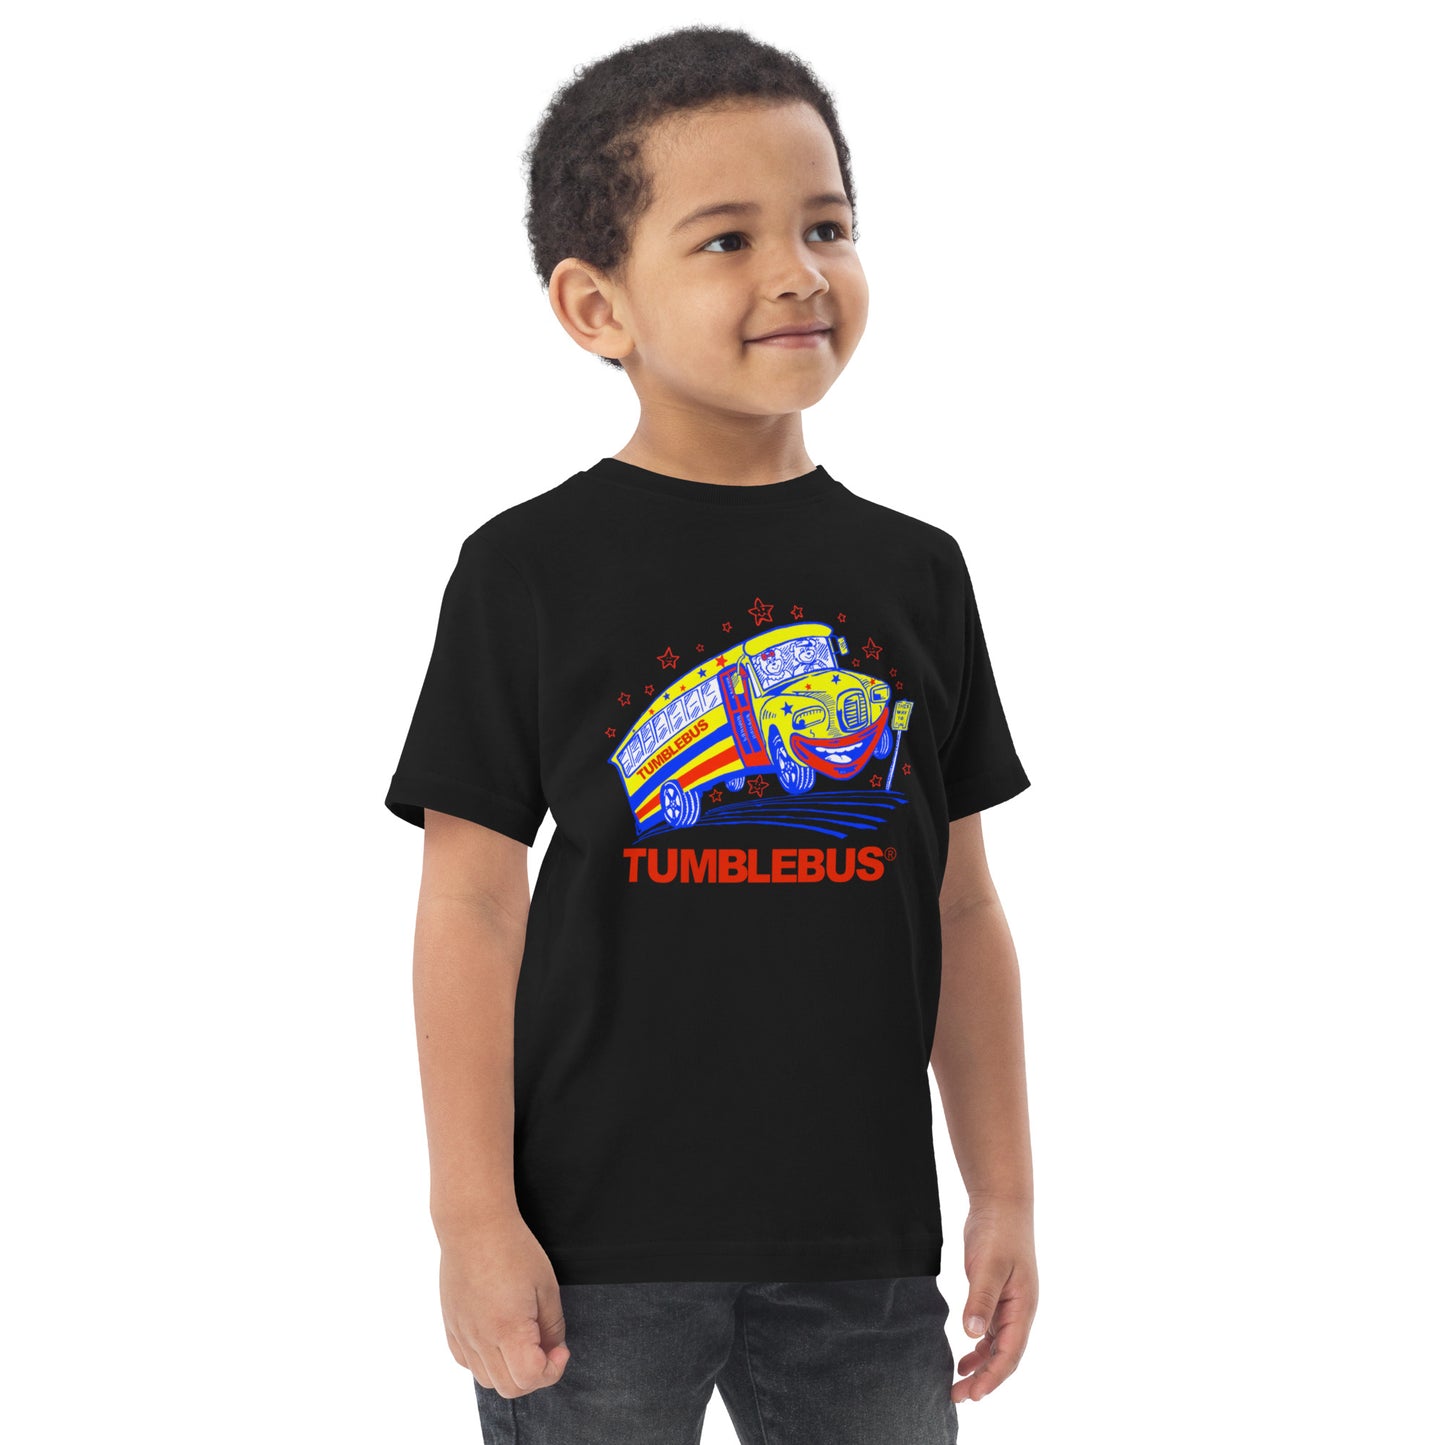 Toddler Tumblebus t-shirt